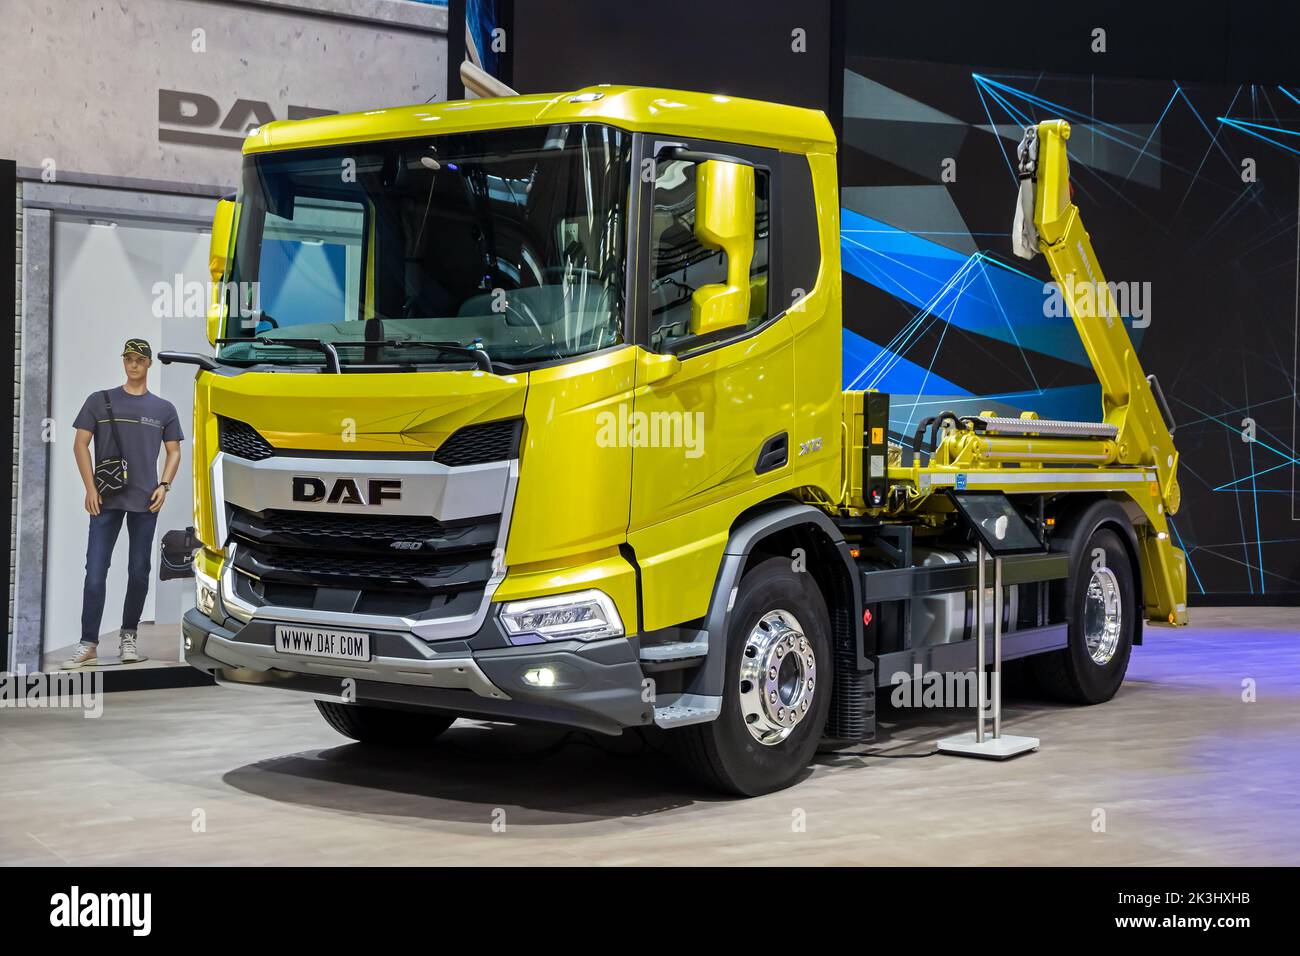 Le camion-tracteur DAF XD 450 est présenté au salon de l'automobile de transport IAA de Hanovre. Allemagne - 20 septembre 2022 Banque D'Images